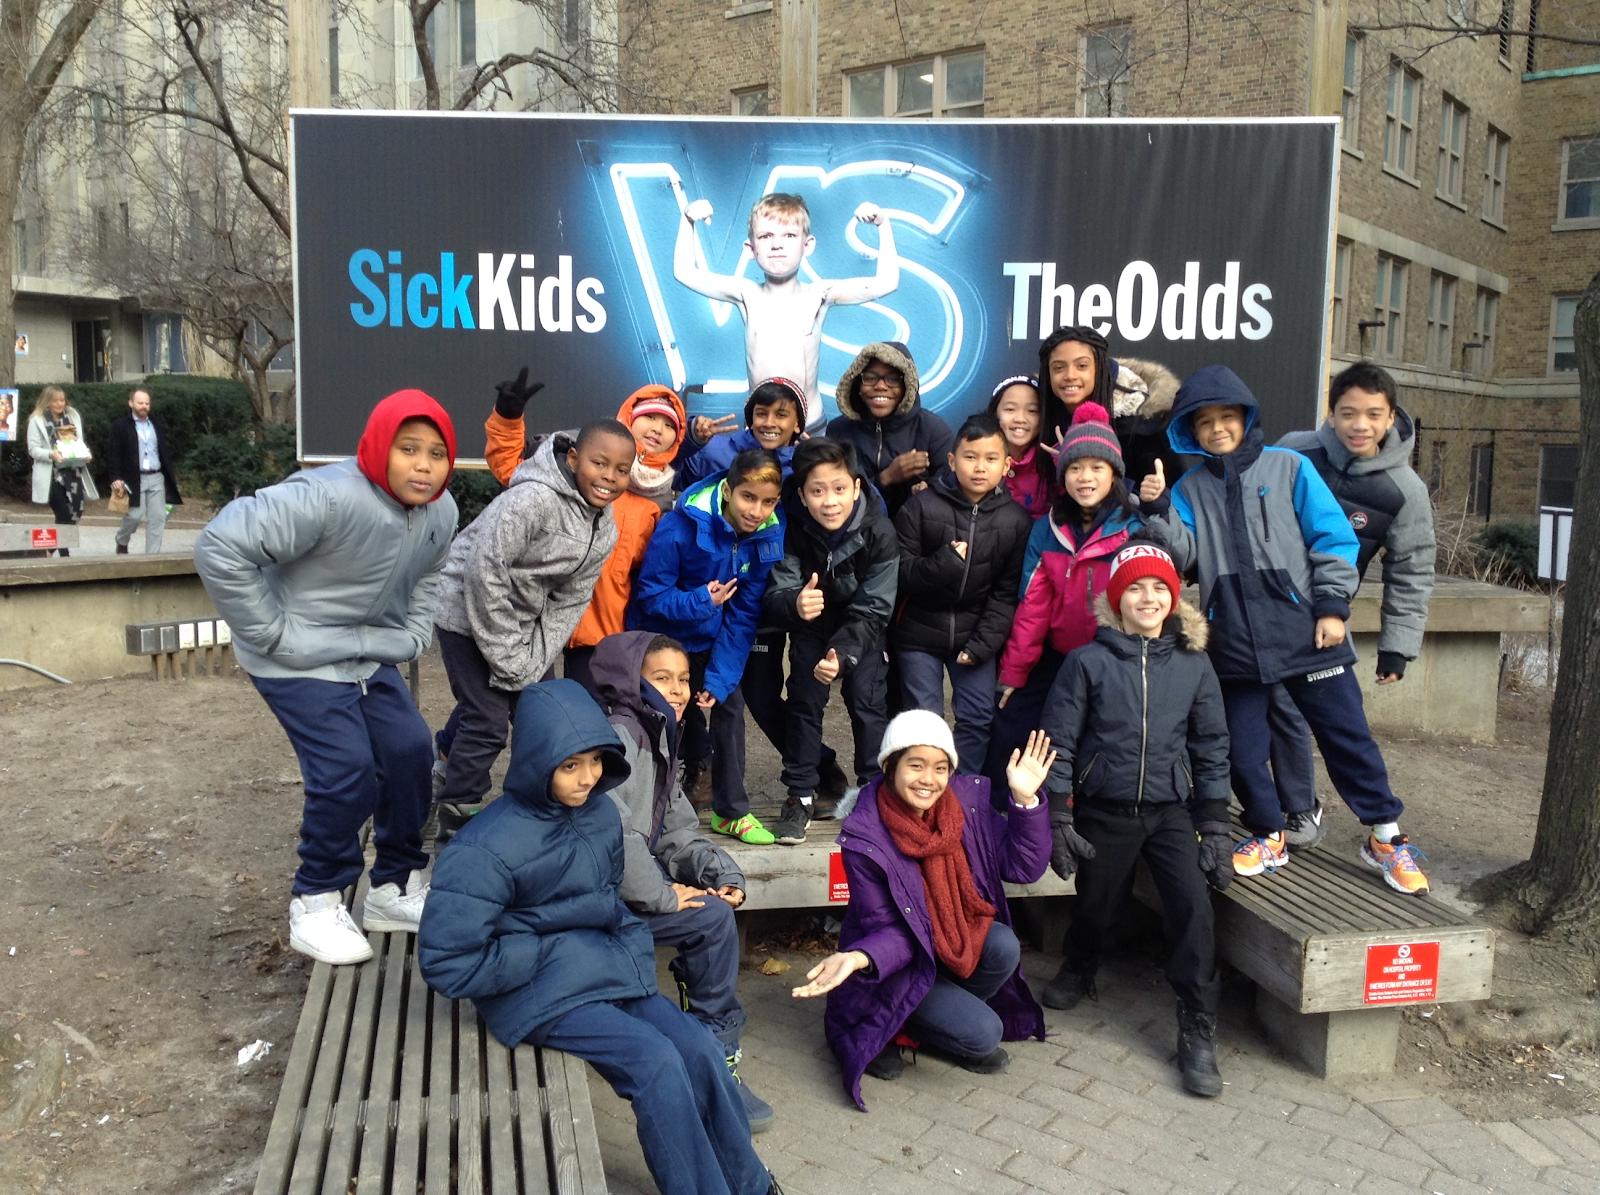 Children posing in front of SickKids' billboard